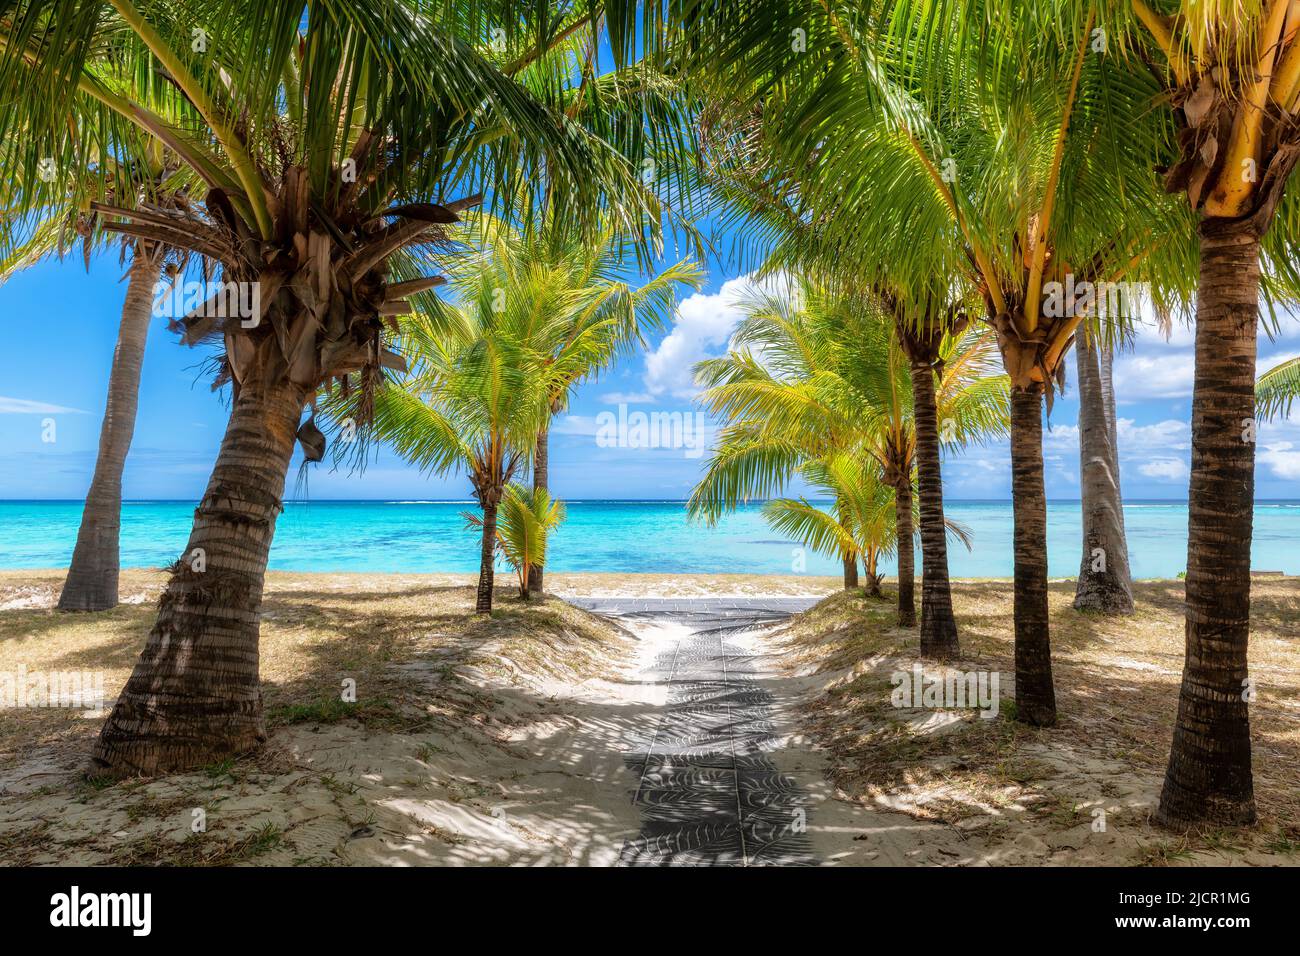 Bel vicolo con palme nell'isola tropicale Foto Stock